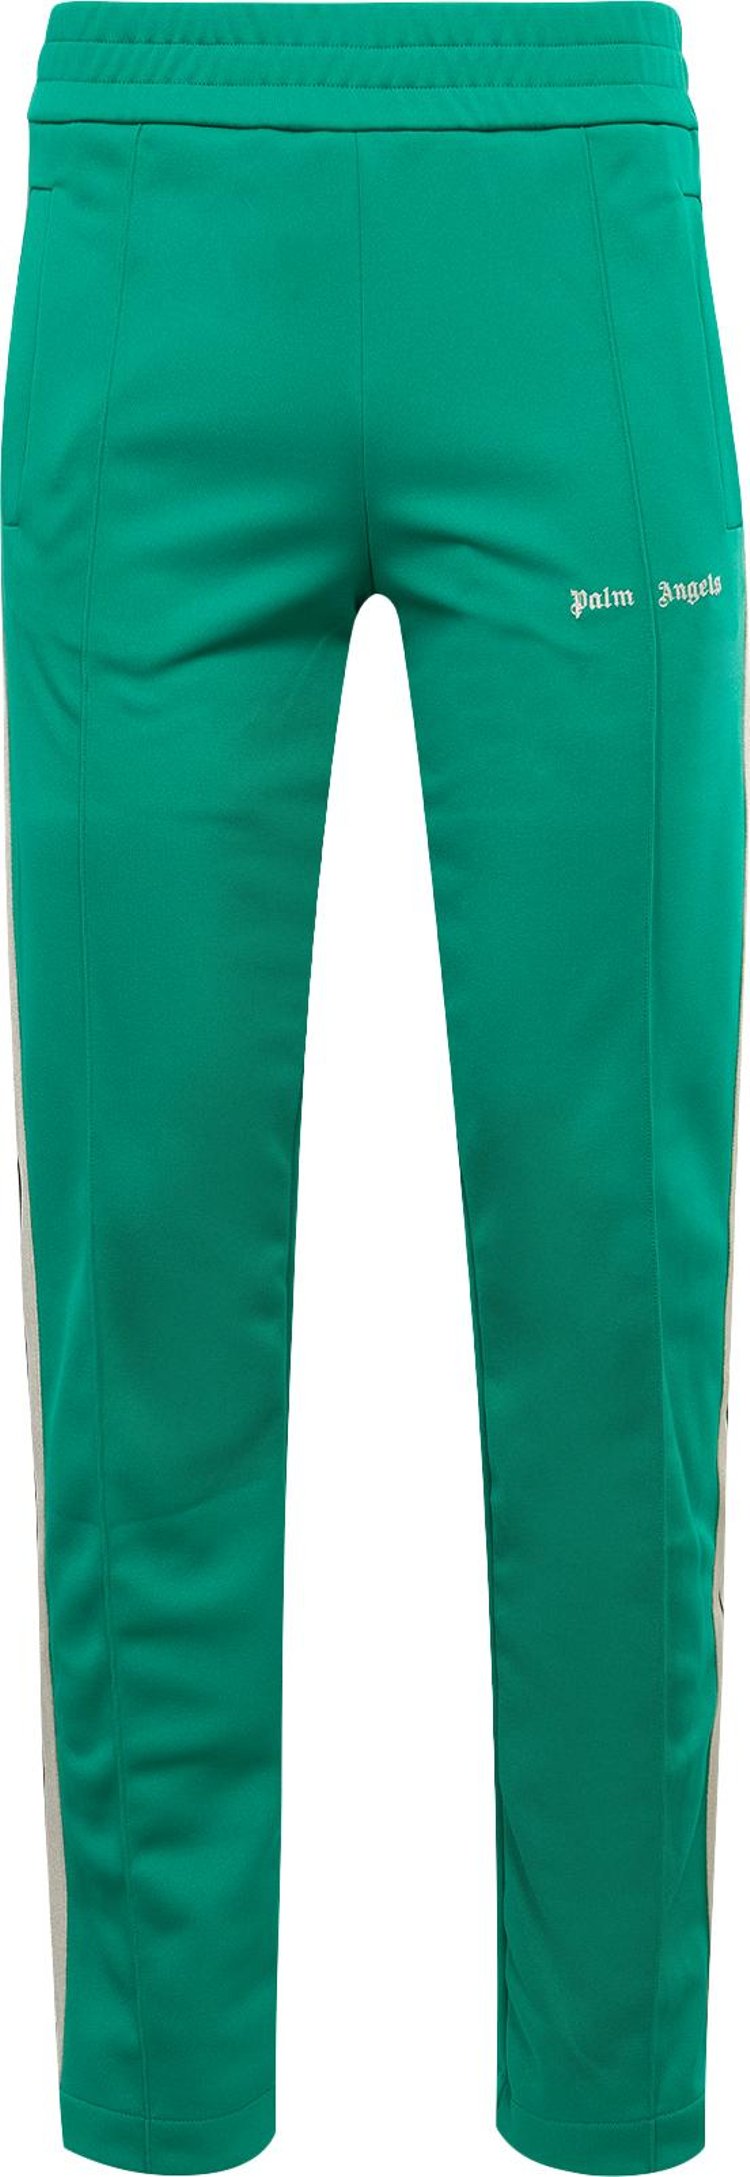 Palm Angels Classic Logo Track Pants 'Green'